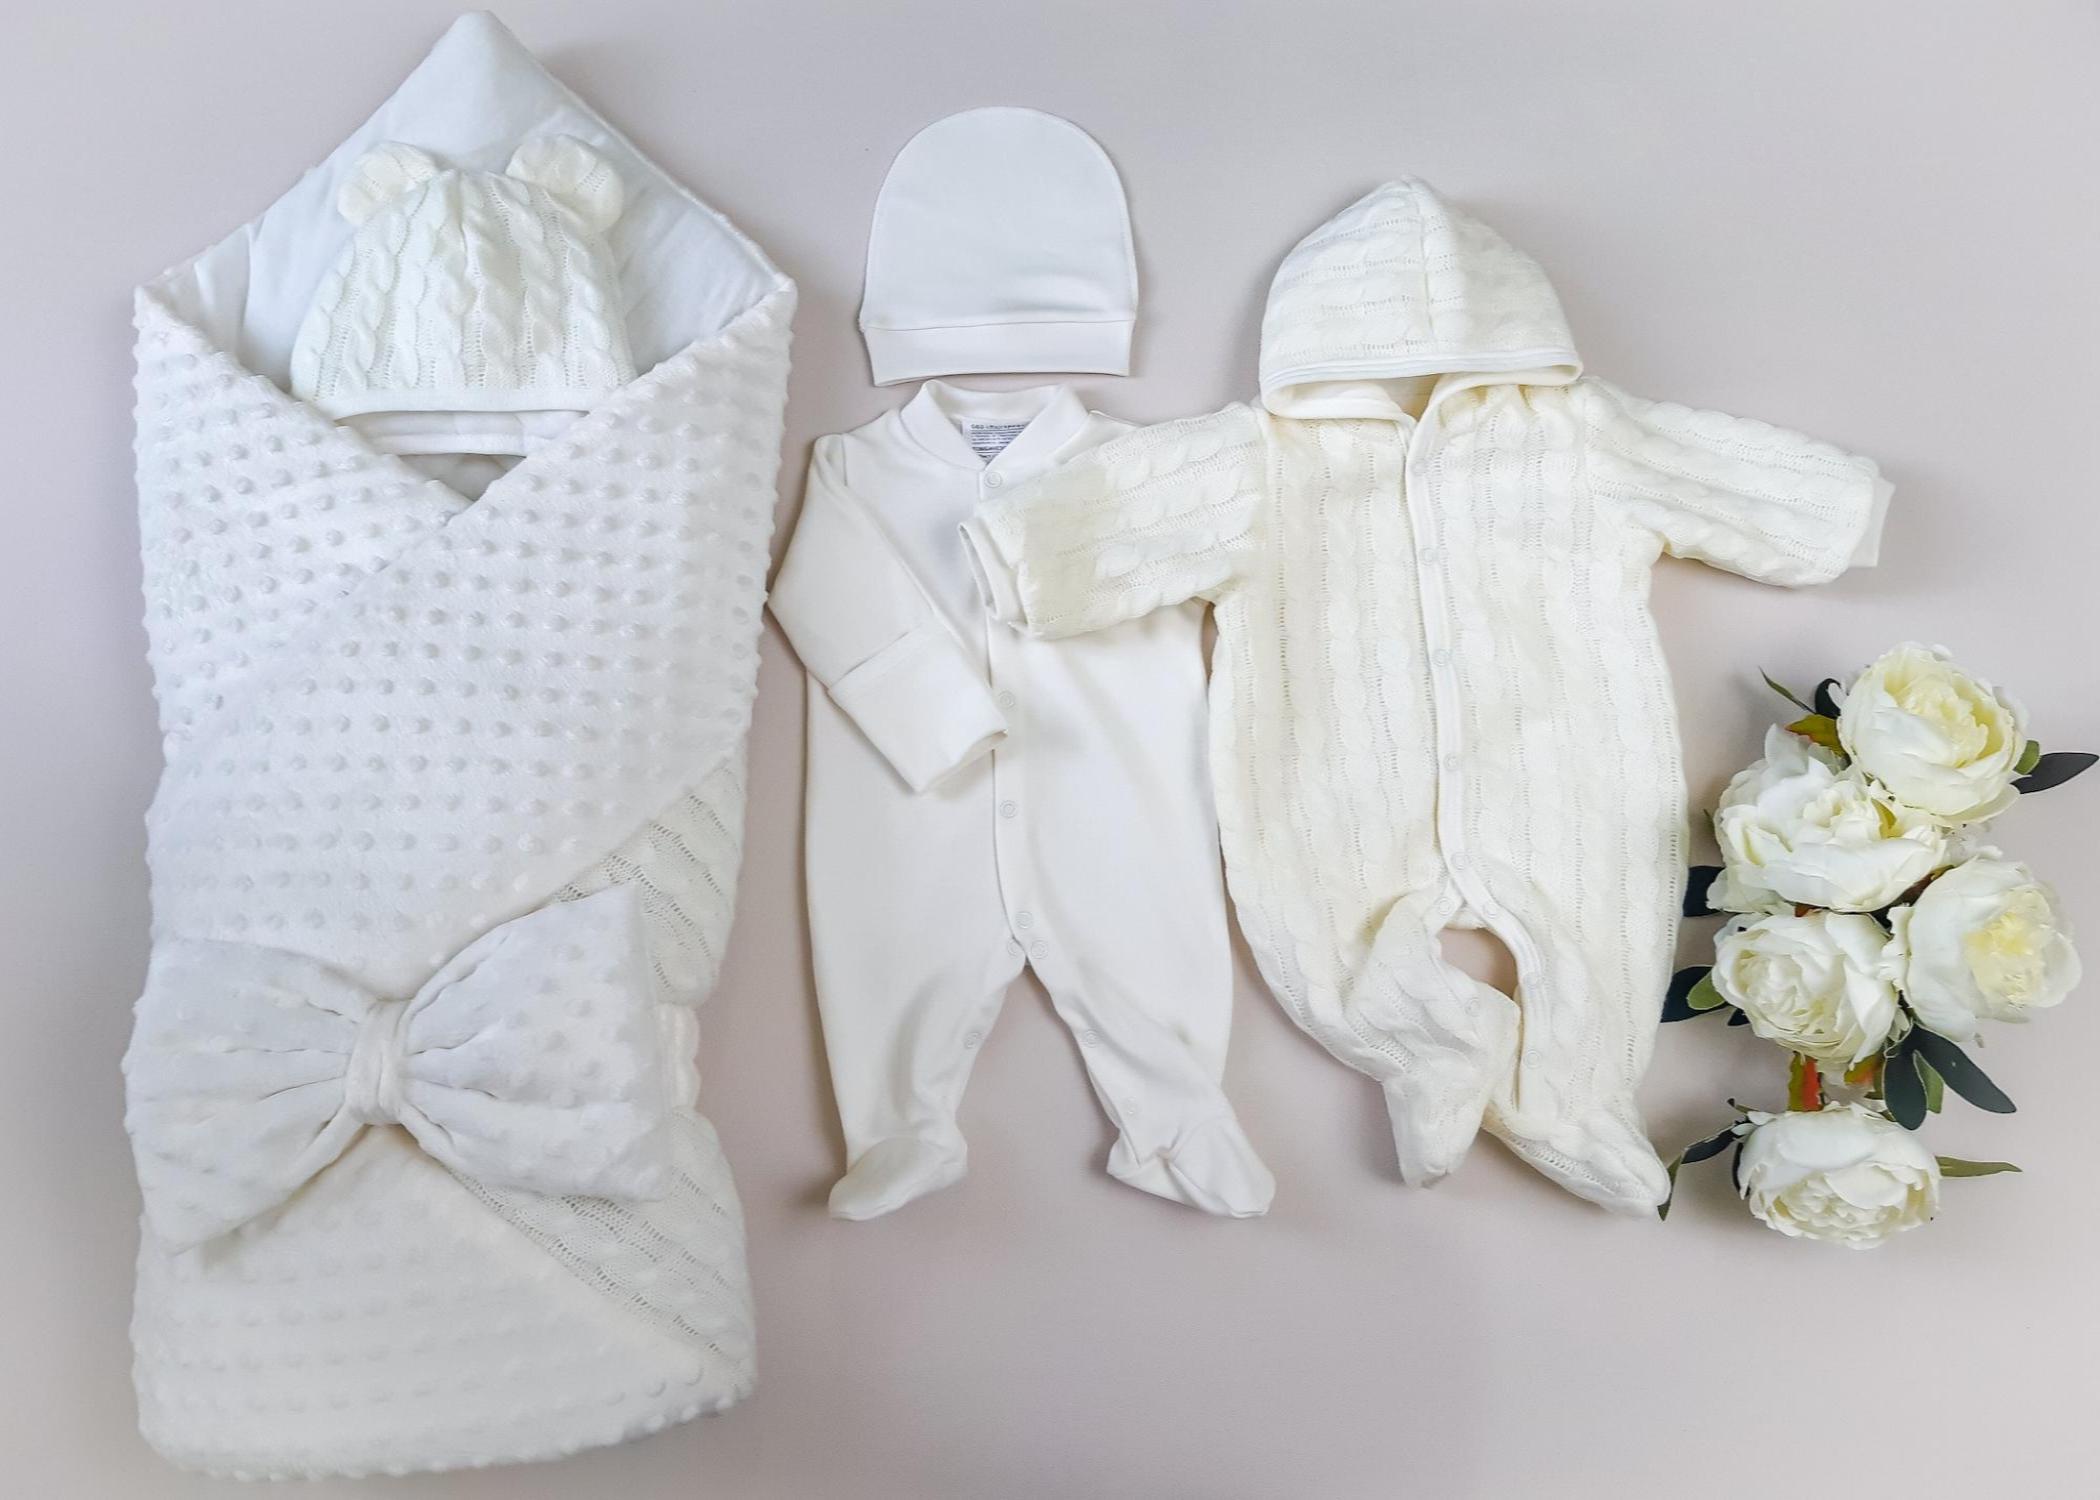 Одежда для новорожденного осенью